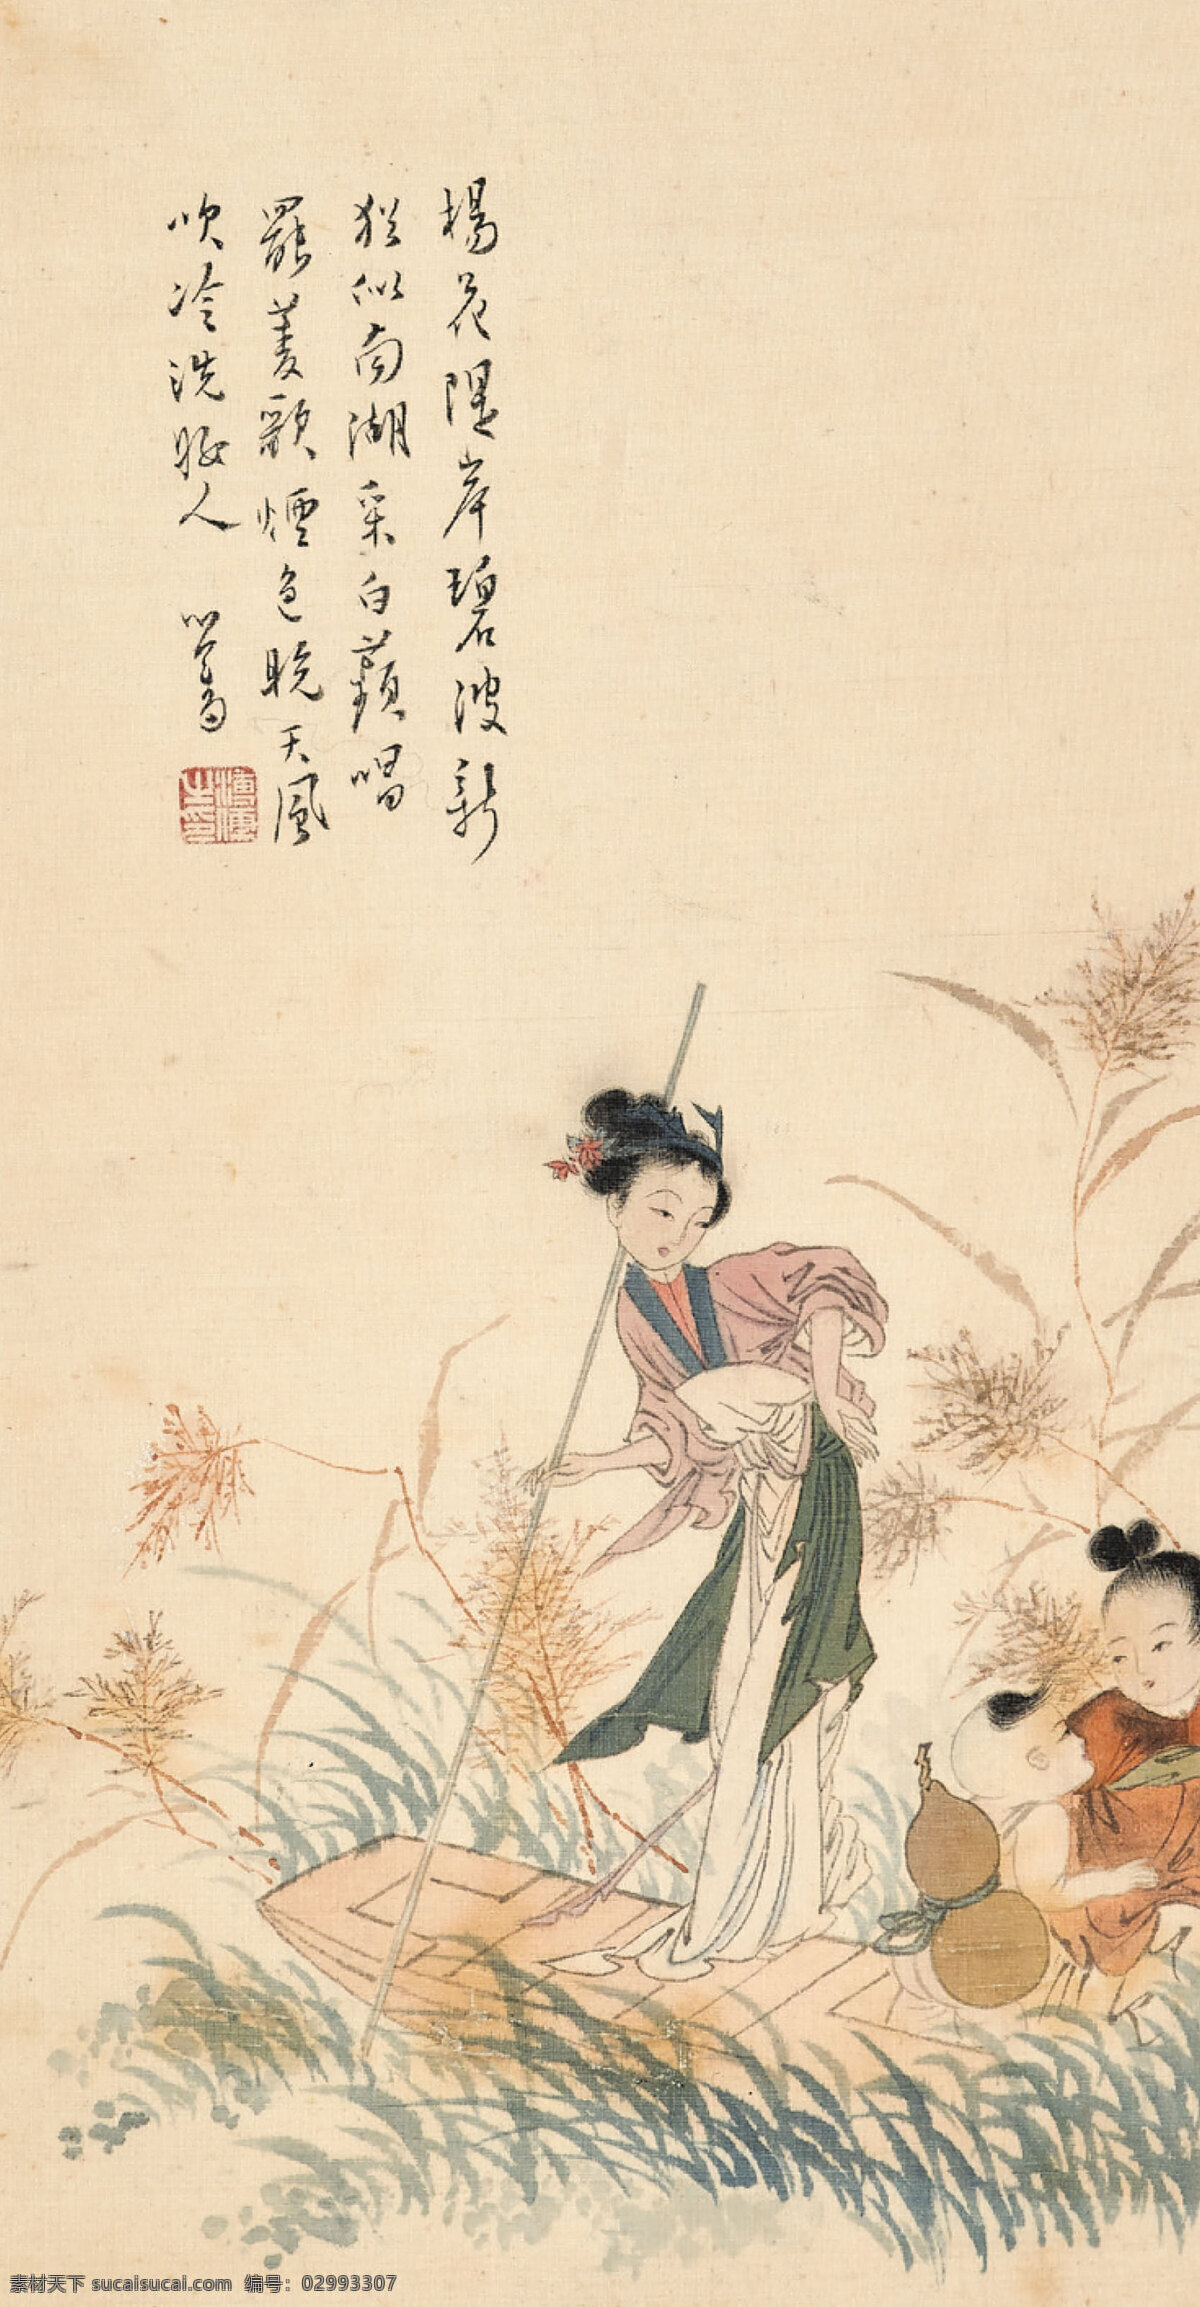 采莲 溥濡作品 池塘 芦苇 小船 两个小孩子 年轻女子 中国古代画 中国古画 文化艺术 绘画书法